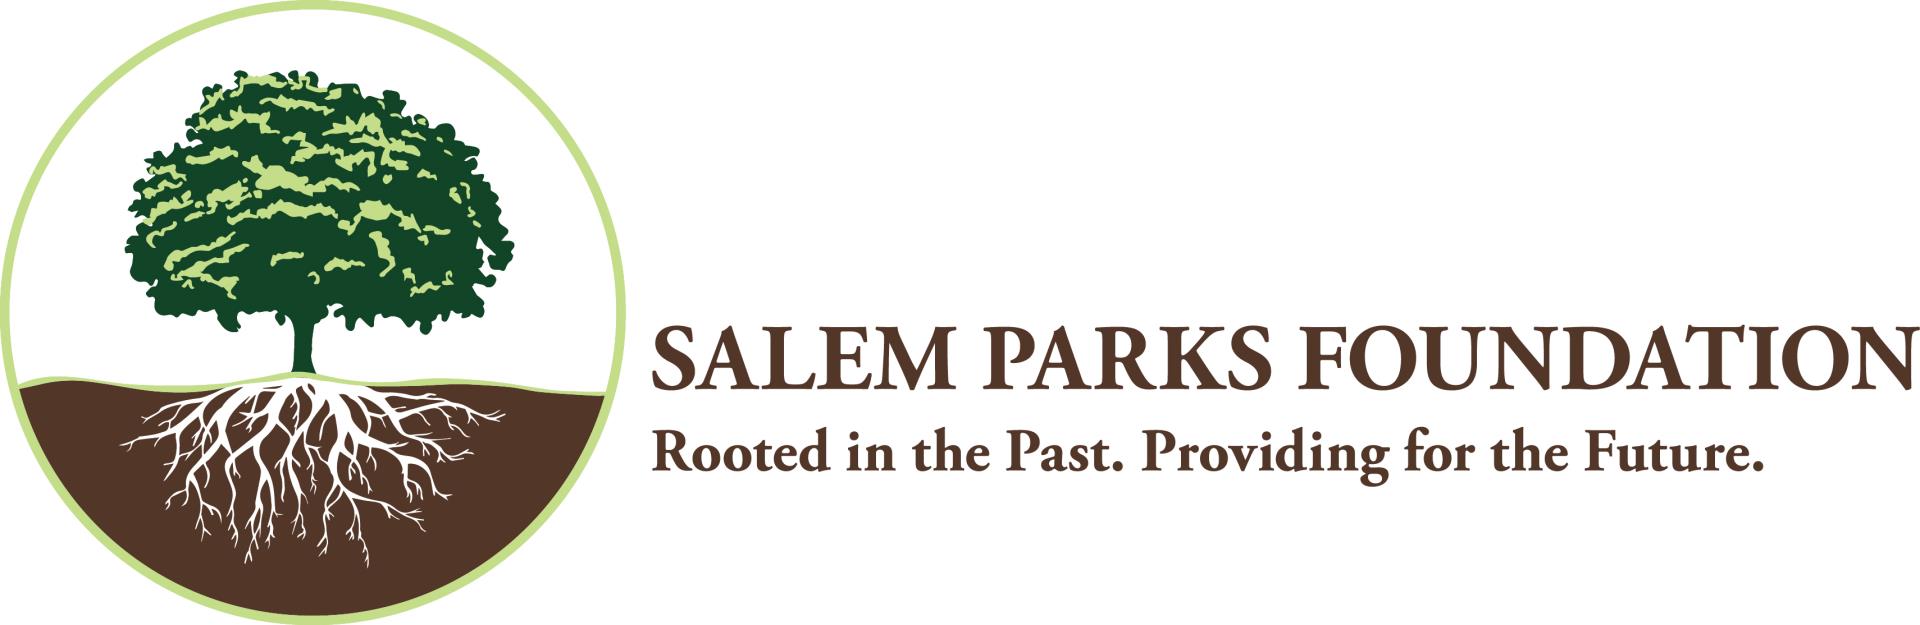 Salem Parks Foundation logo